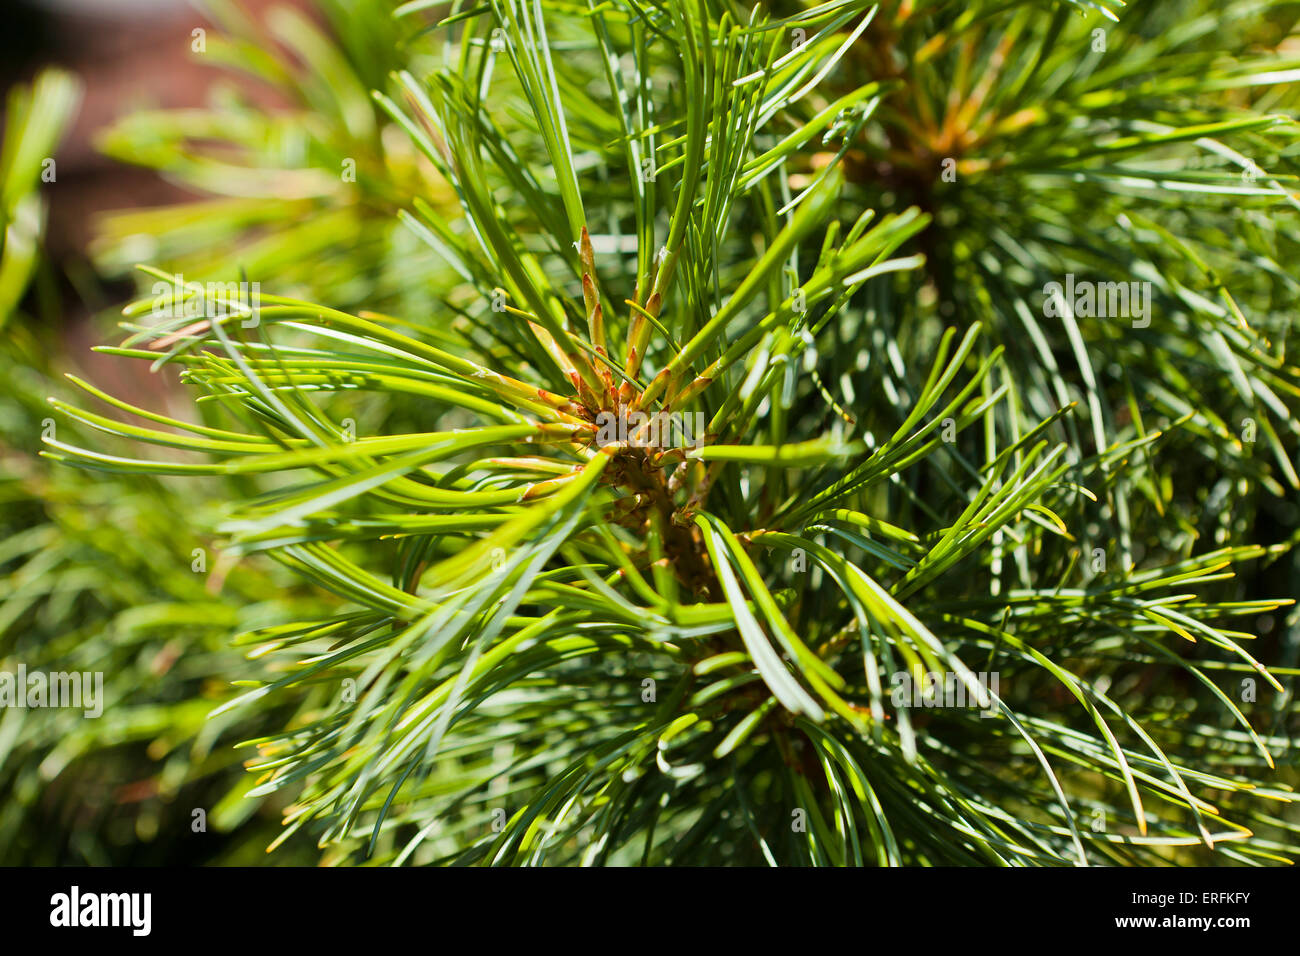 Dragon's Eye Korean Pine close up (Pinus koraiensis) Stock Photo